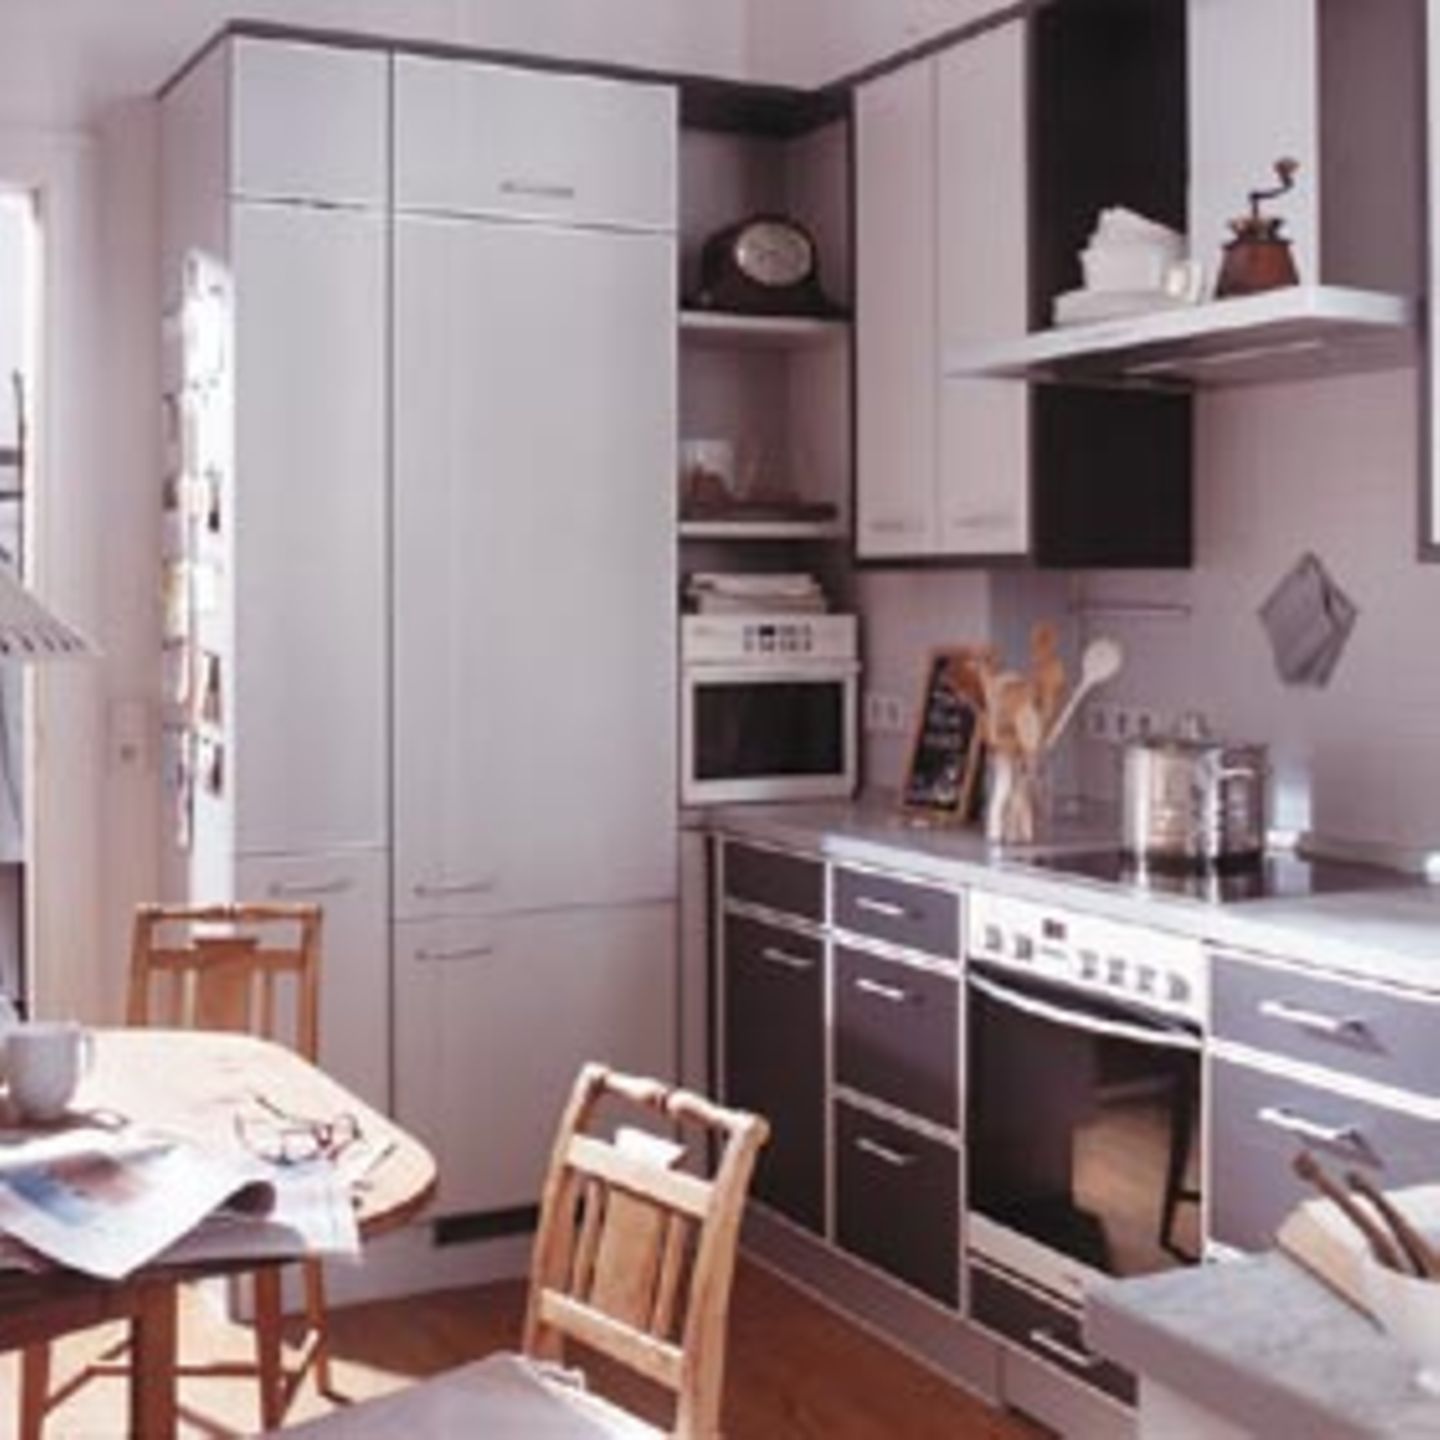 Die Einrichtung zeigt, dass auch in einer klassischen Zeile alles untergebracht werden kann, was in einer modernen Küche benötigt wird. In den Hochschränken an der Seitenwand gibt es genügend Stauraum für Utensilien und Geschirr, das Glaskeramik-Kochfeld über dem Backofen bietet links und rechts genügend Arbeitsfläche, der Dunstabzug wird von zwei Oberschränken eingerahmt. Küche: Alno "Alnotec" in Graphit und Arktisgrau Küchenstudio: Grambow & Widmer Ellerried 7 19061 Schwerin Fon: 0385-646450 info@ihrekueche.de www.alno.de